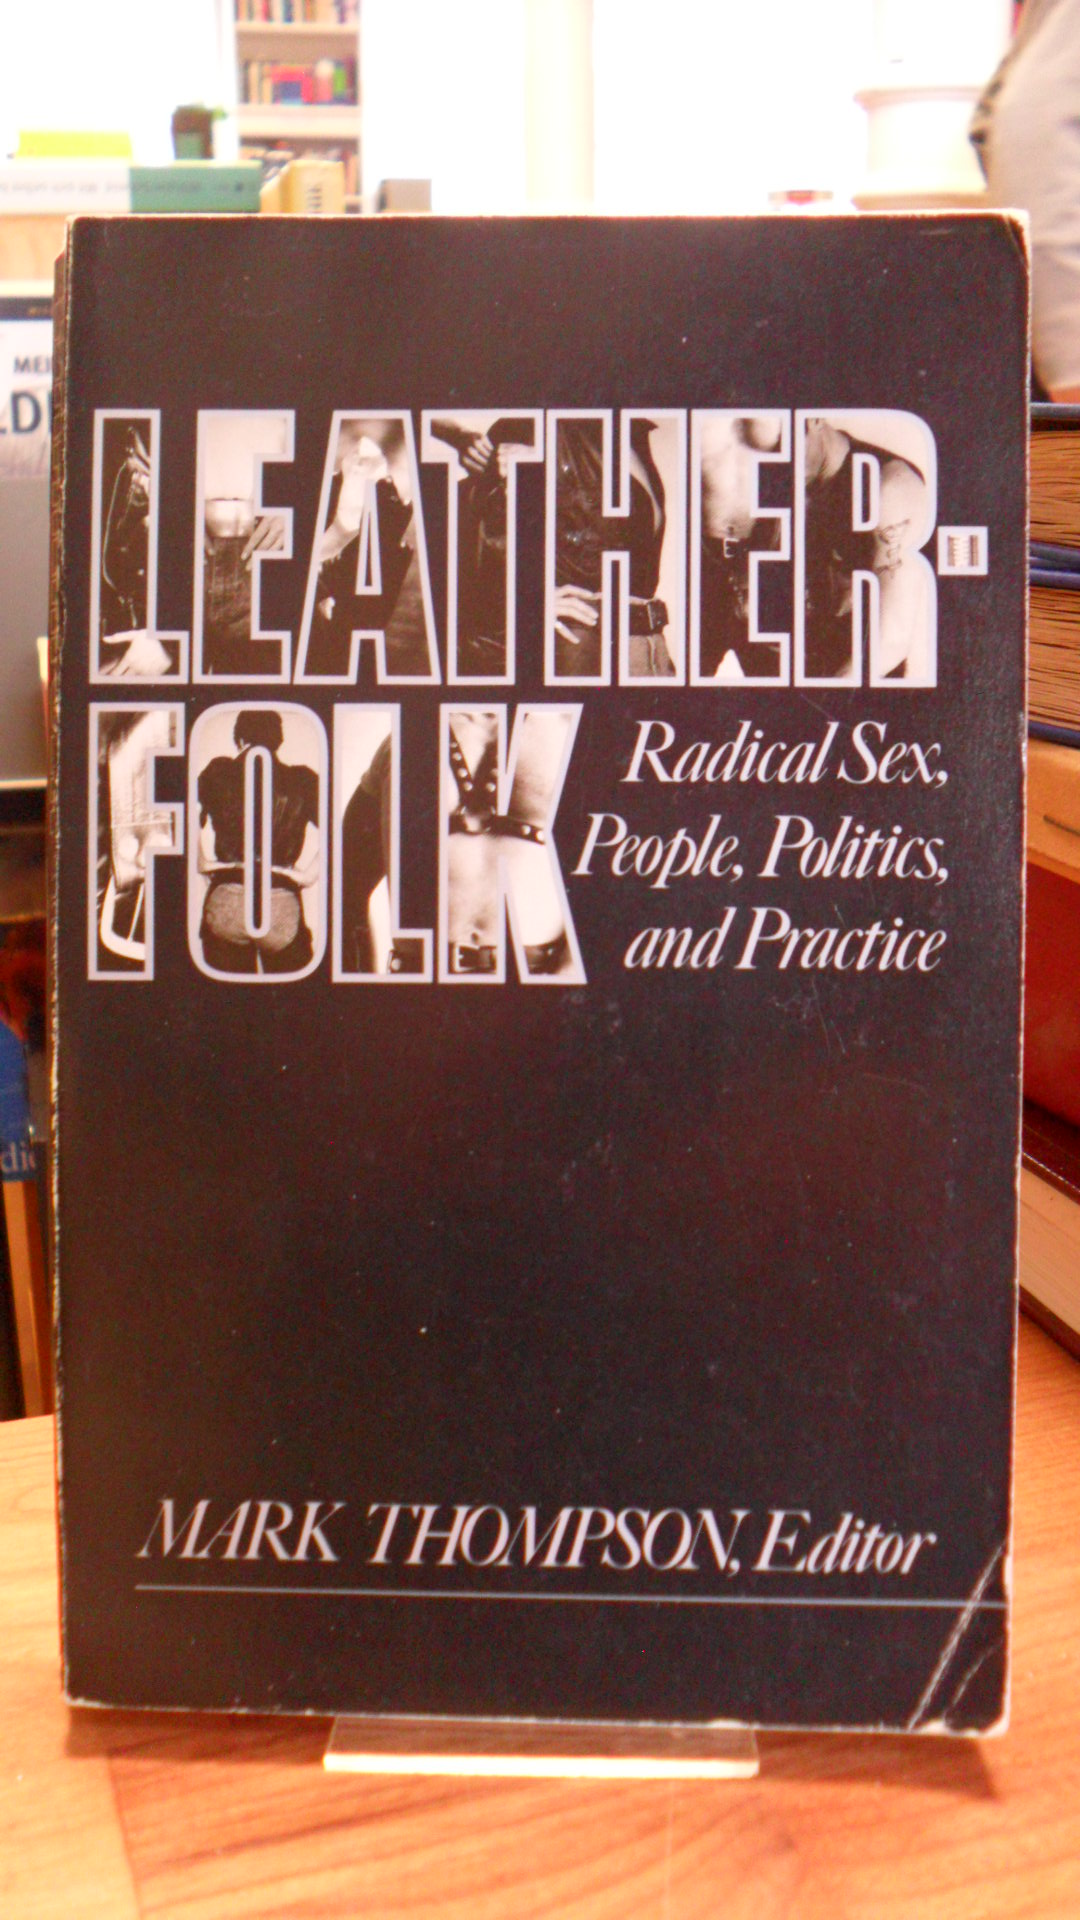 Thompson, Leatherfolk: Radical Sex, People, Politics & Practice,